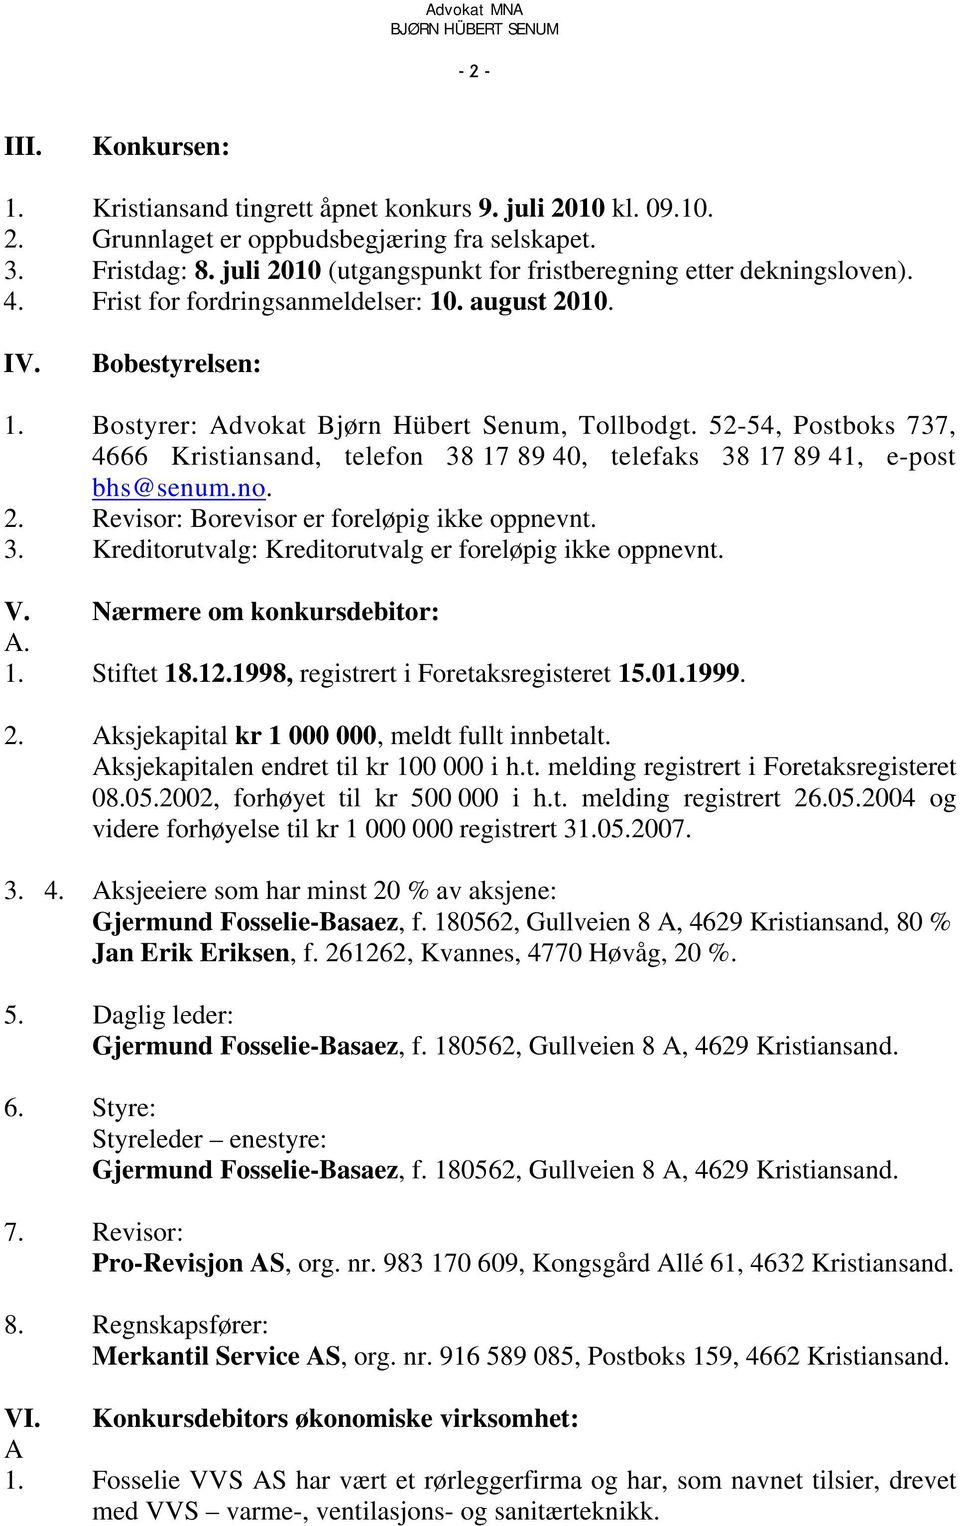 52-54, Postboks 737, 4666 Kristiansand, telefon 38 17 89 40, telefaks 38 17 89 41, e-post bhs@senum.no. 2. Revisor: Borevisor er foreløpig ikke oppnevnt. 3. Kreditorutvalg: Kreditorutvalg er foreløpig ikke oppnevnt.